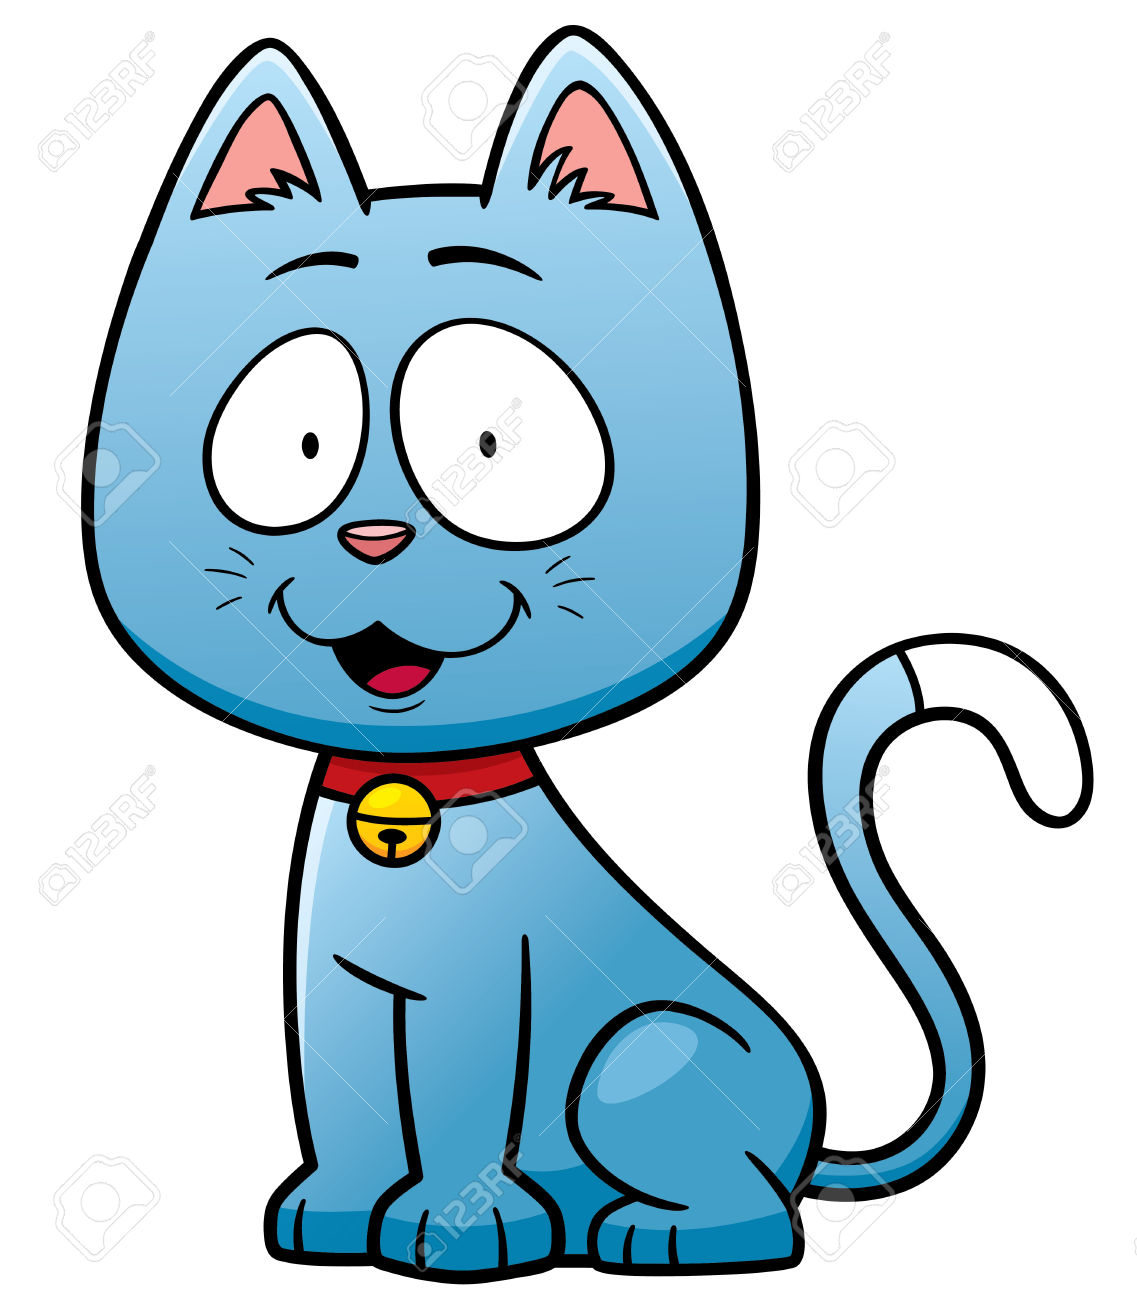 99 Animasi Gambar Kartun Kucing Lucu Dan Imut Gratis Cikimmcom